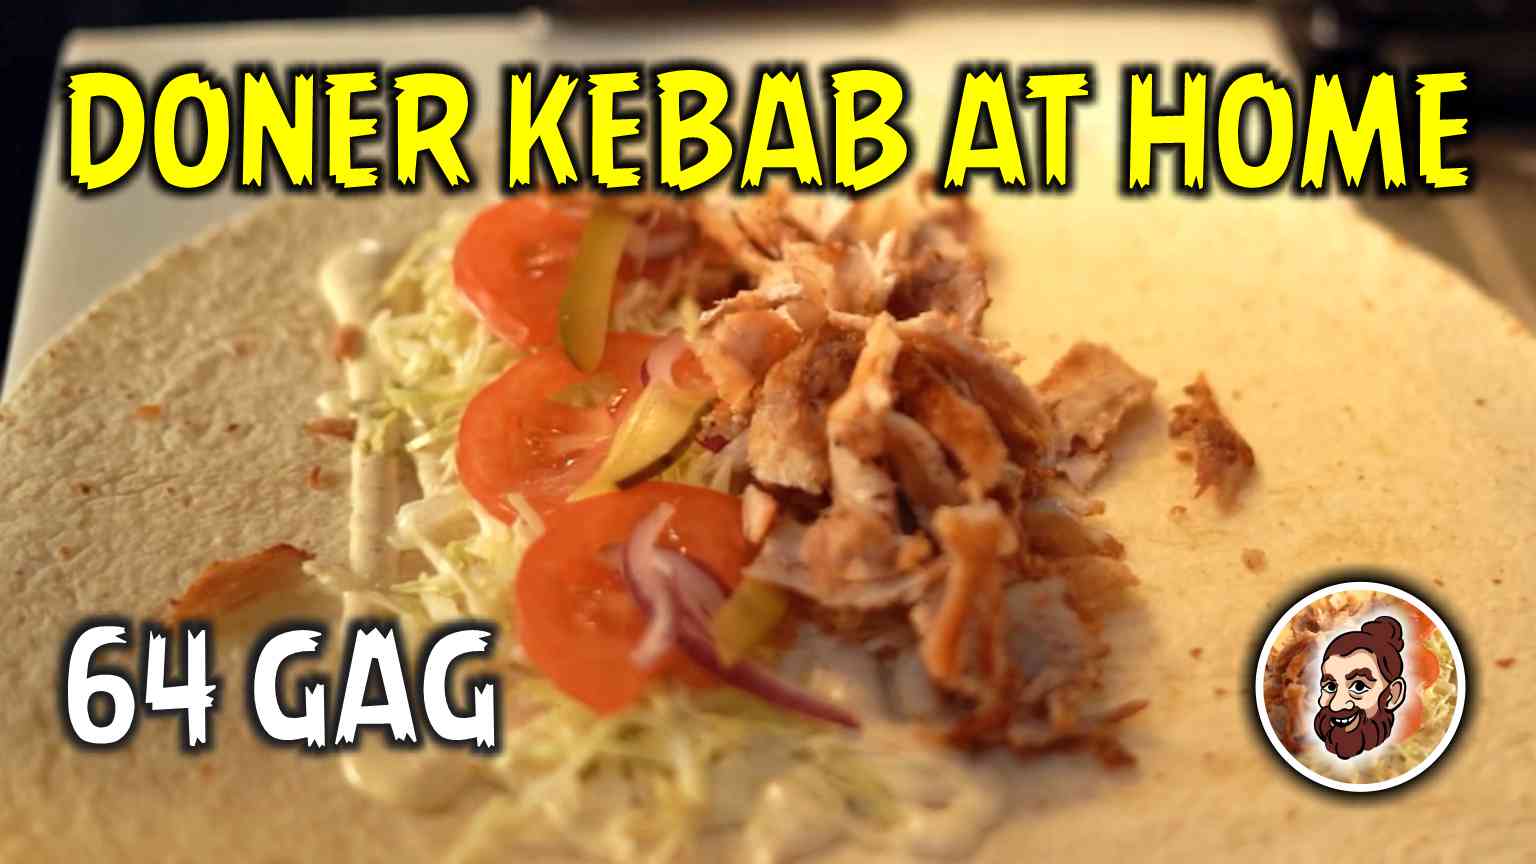 Doner kebab at home